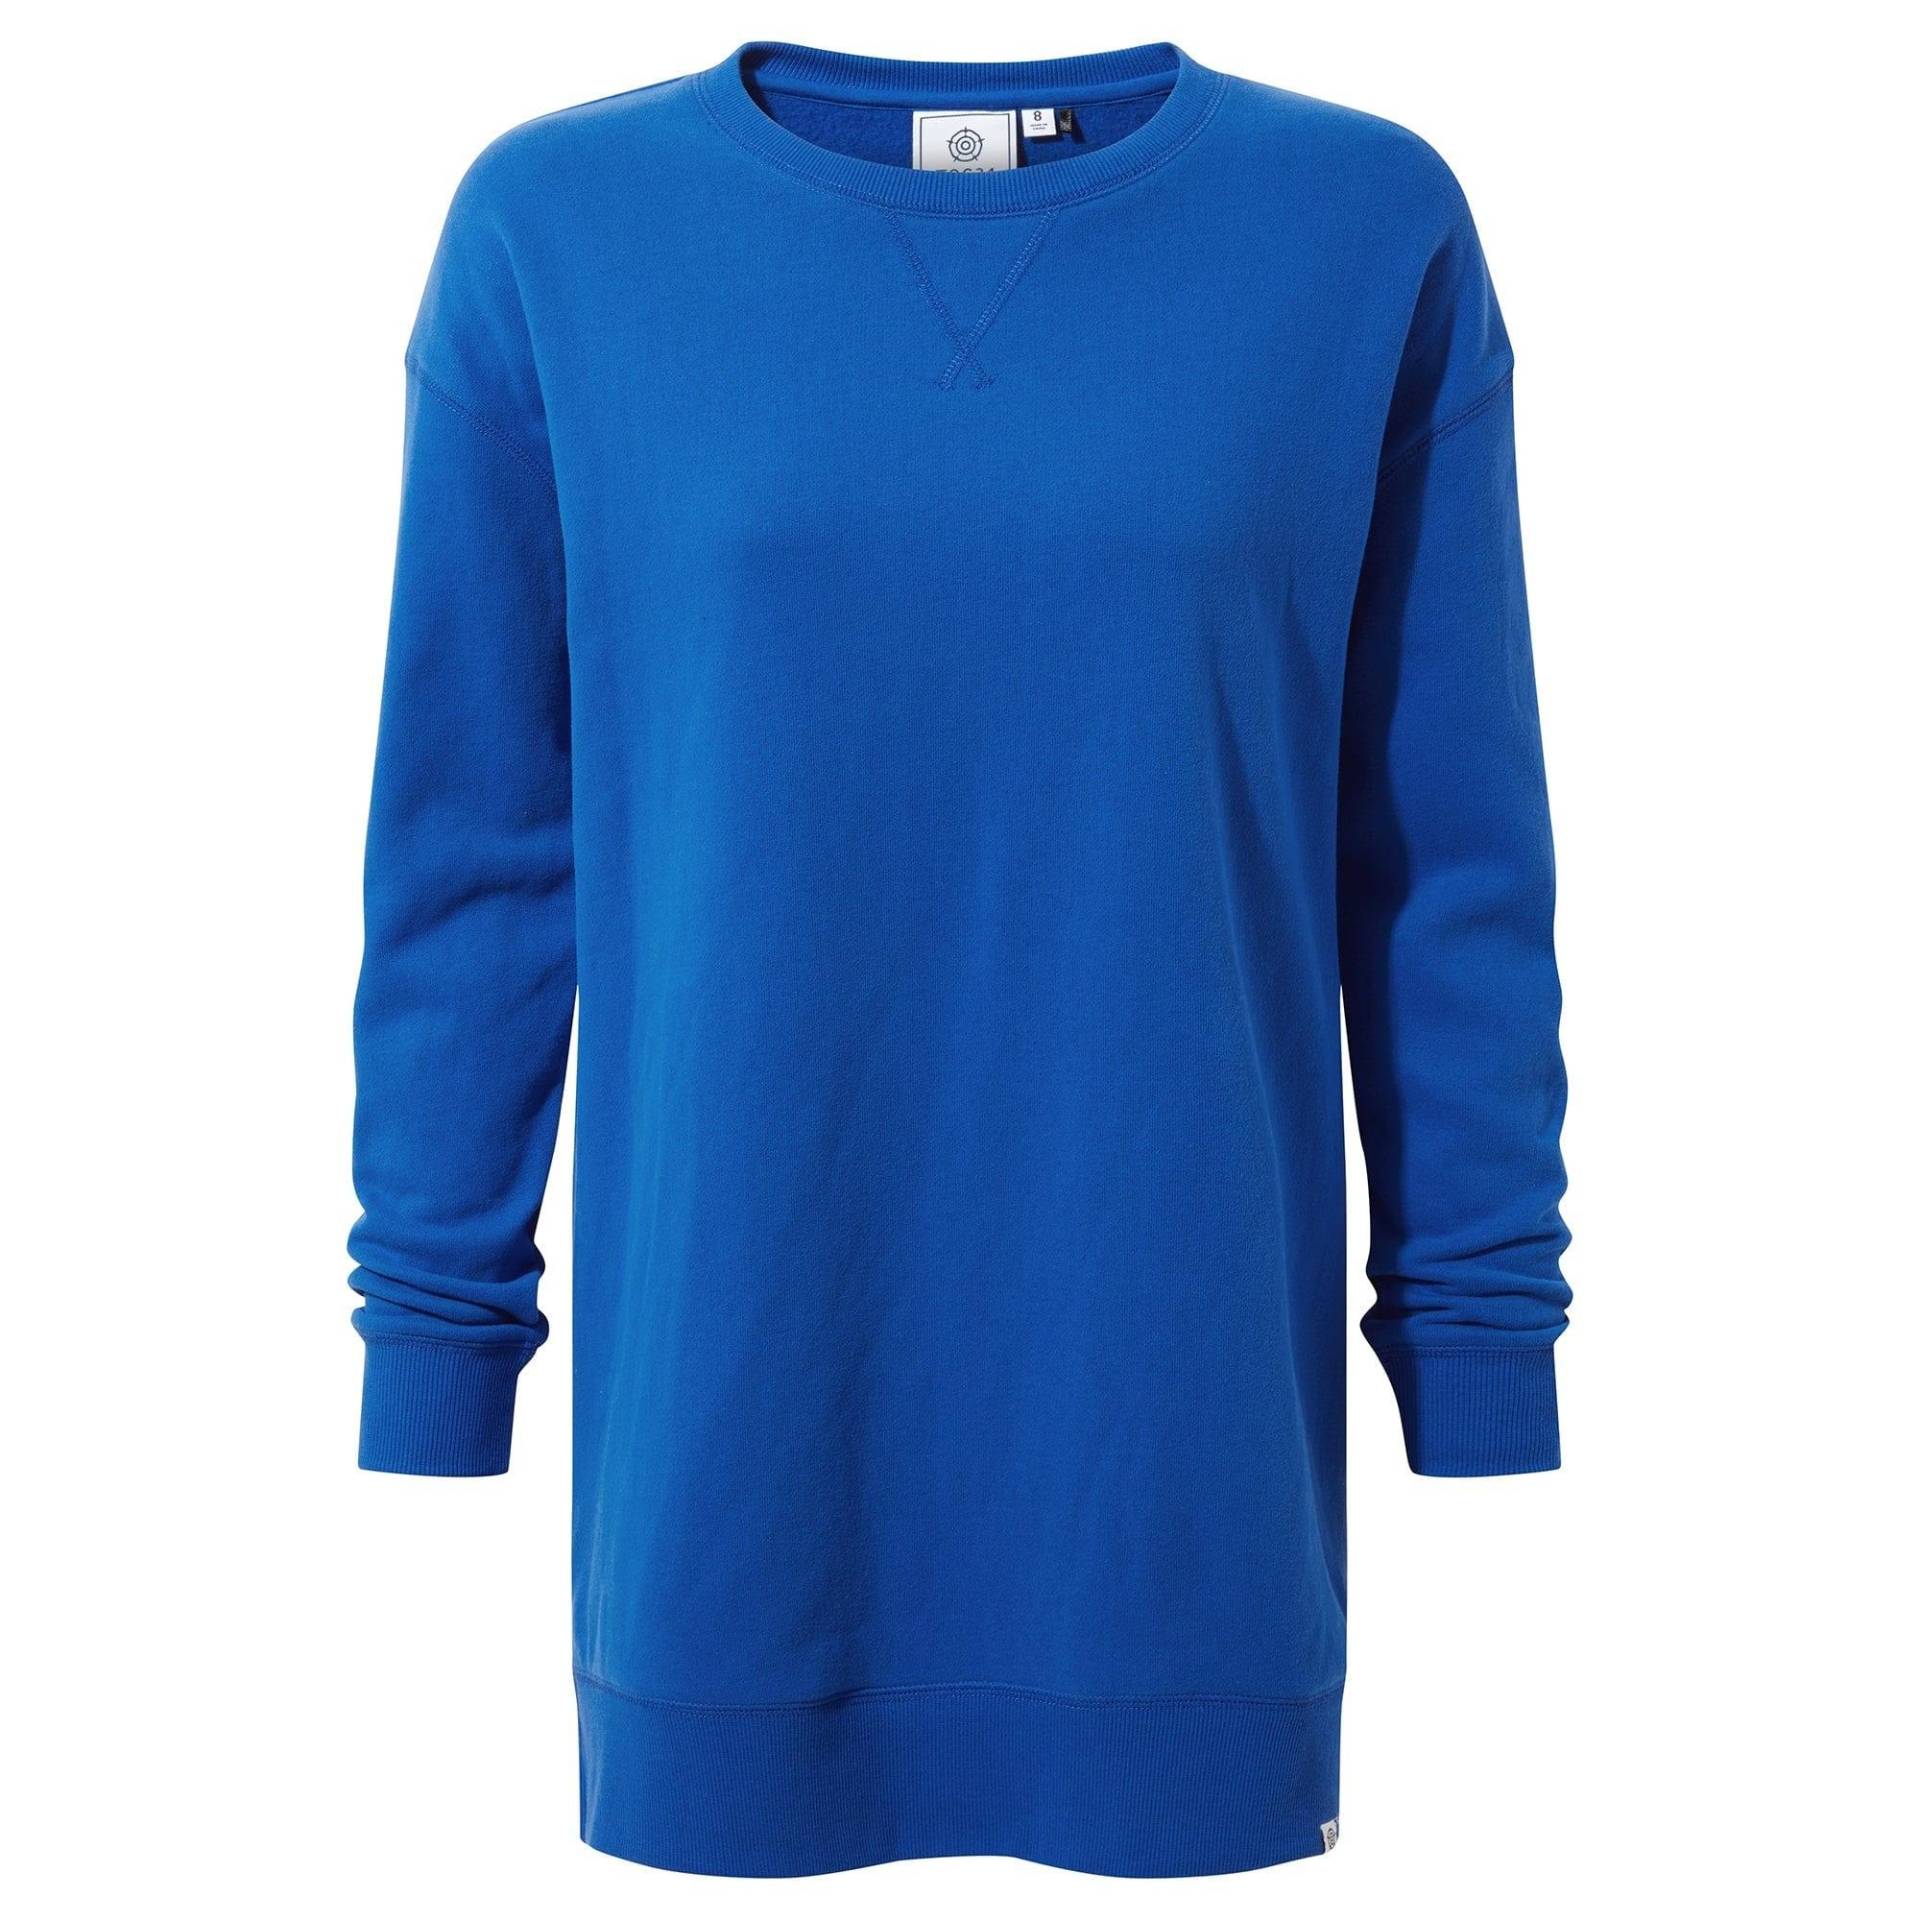 Michelle Sweatshirt Damen Bleached Blau 42 von Tog24